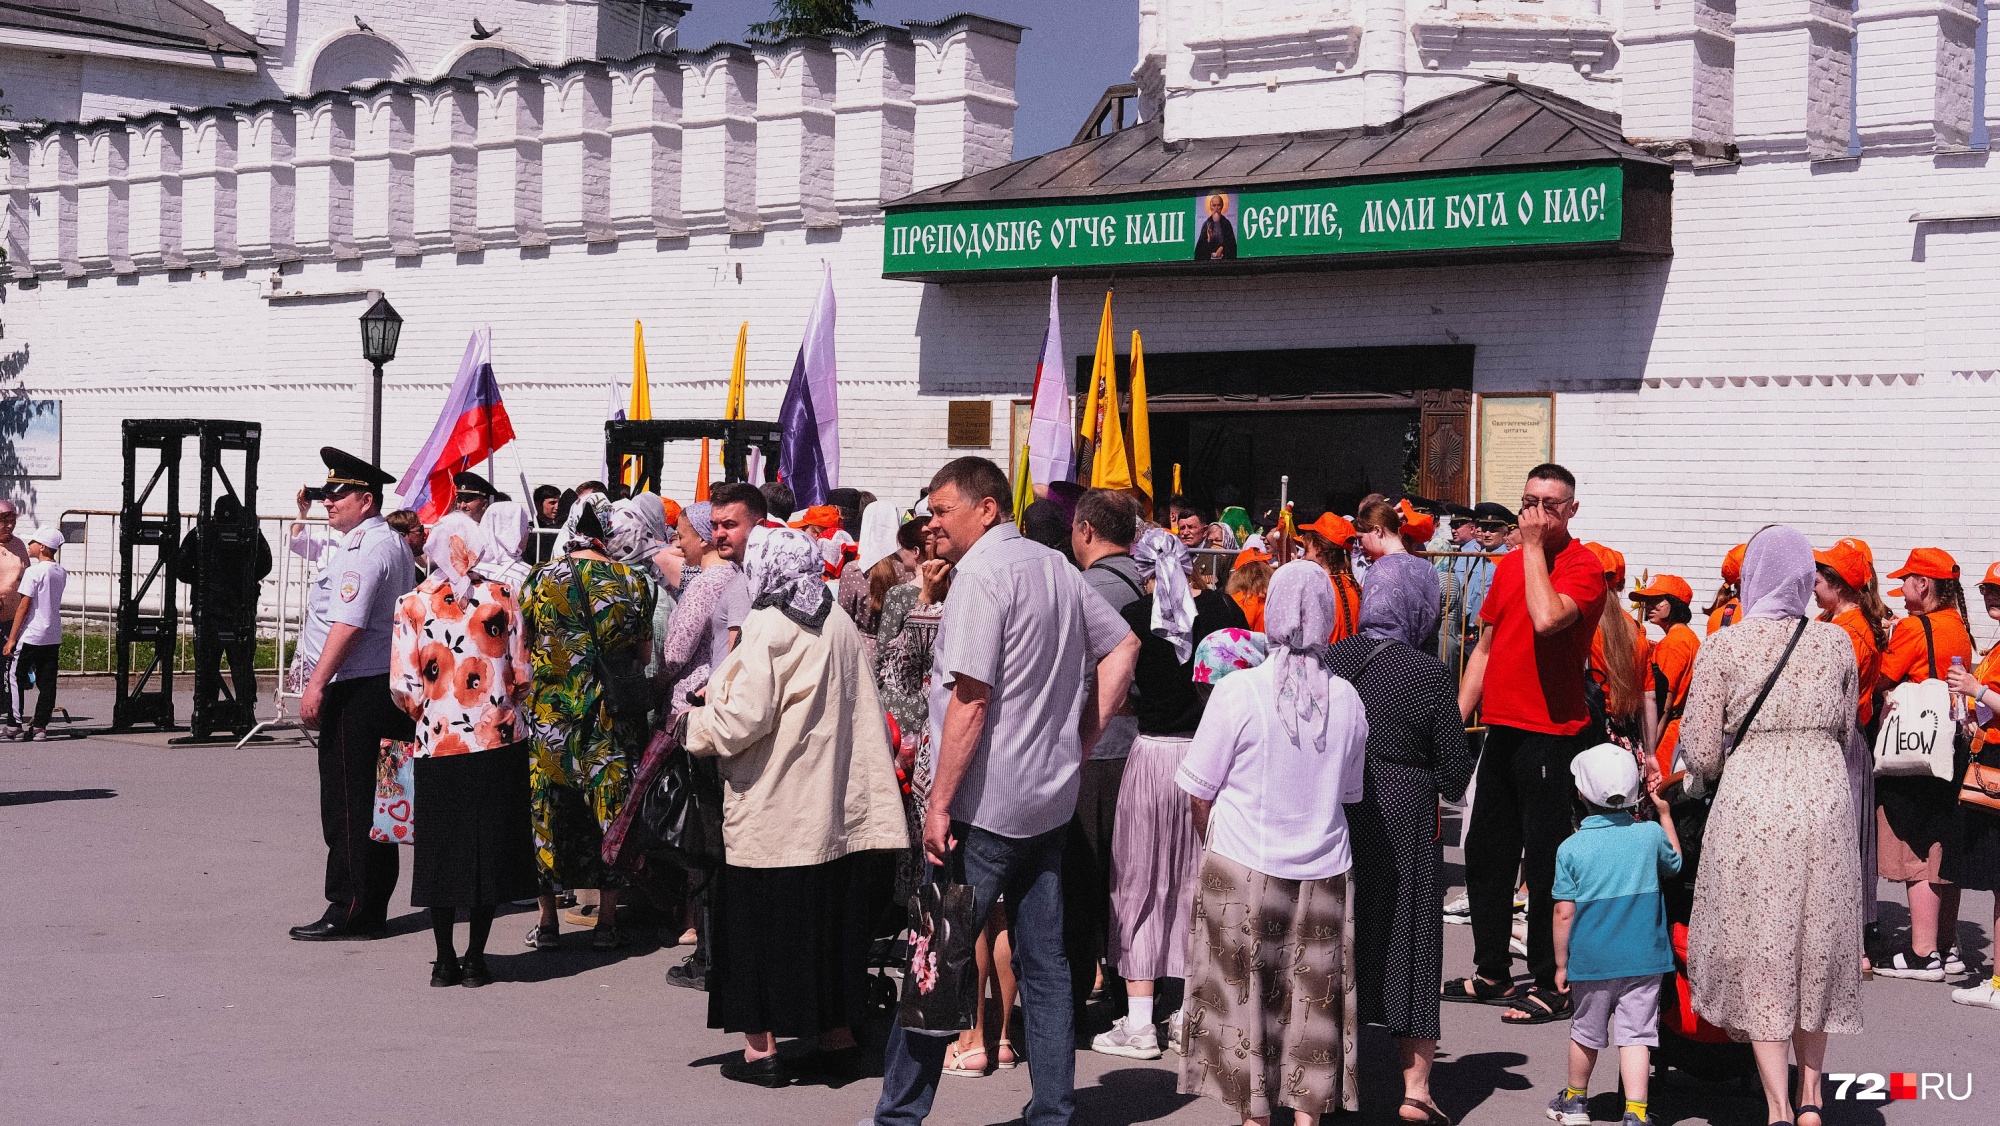 Тюменцы собрались у Свято-Троицкого монастыря задолго до прибытия святыни